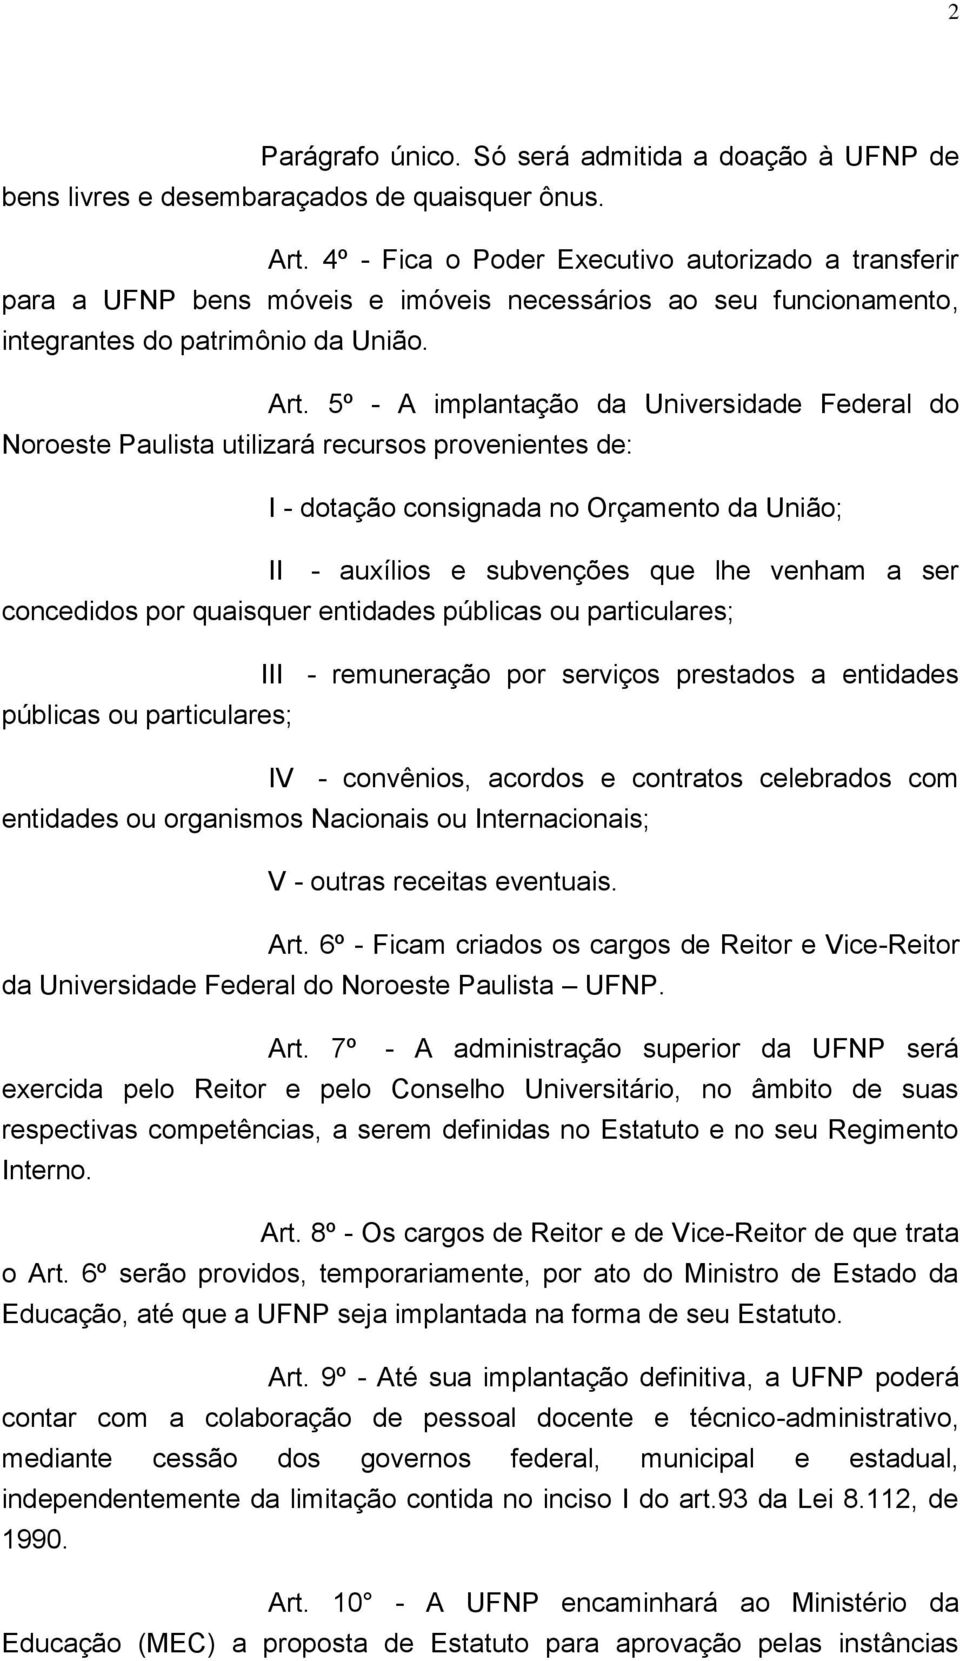 5º - A implantação da Universidade Federal do Noroeste Paulista utilizará recursos provenientes de: I - dotação consignada no Orçamento da União; II - auxílios e subvenções que lhe venham a ser